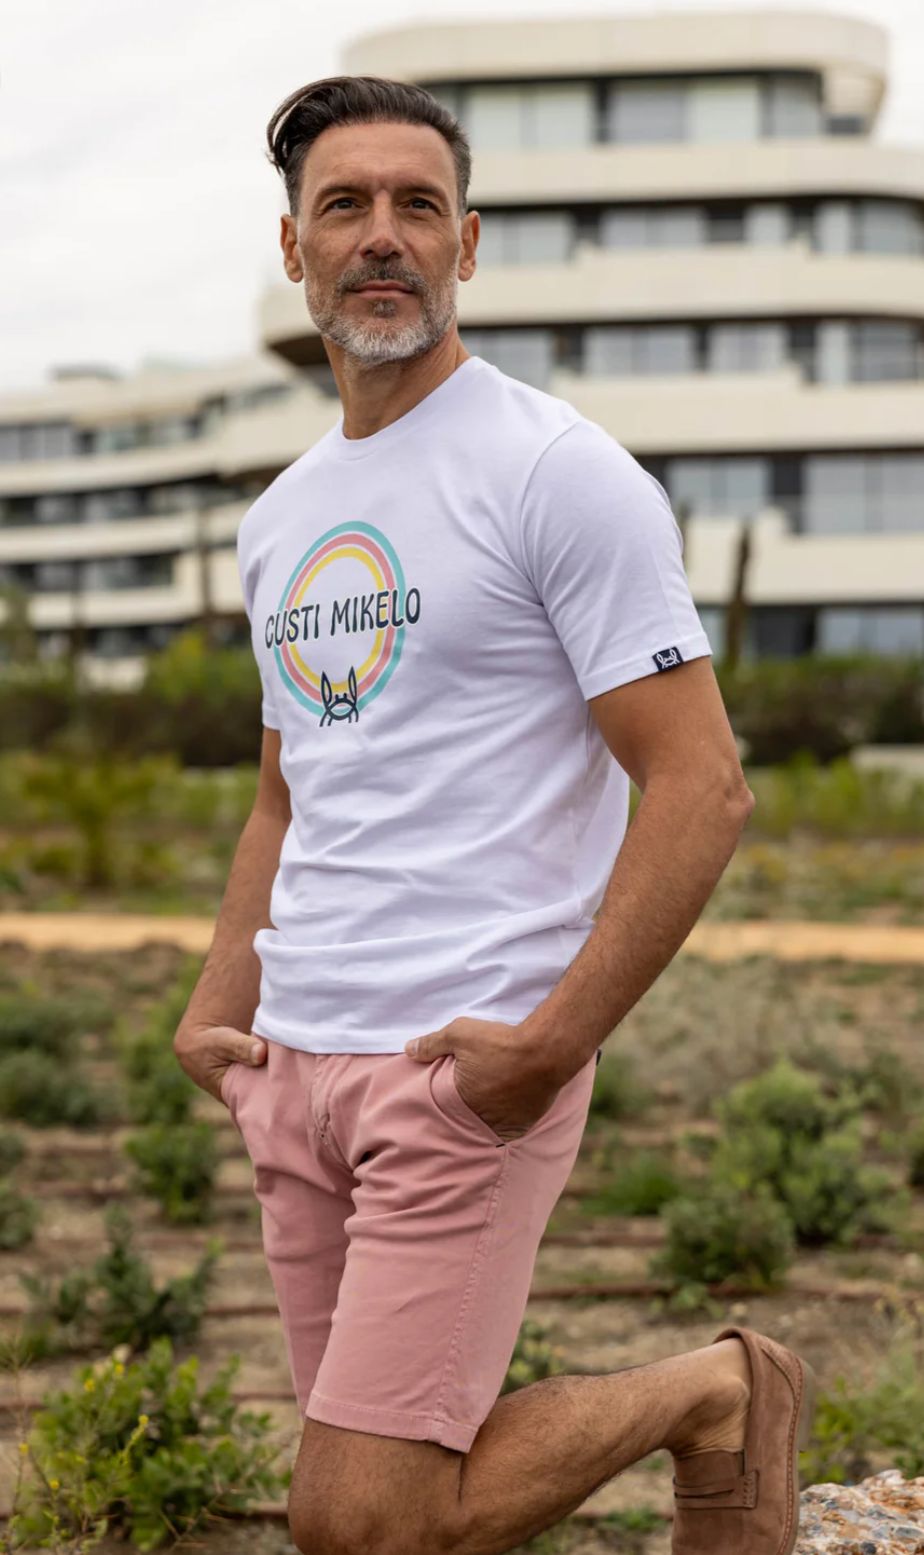 Camiseta hombre Custi Mikelo modelo arcoiris